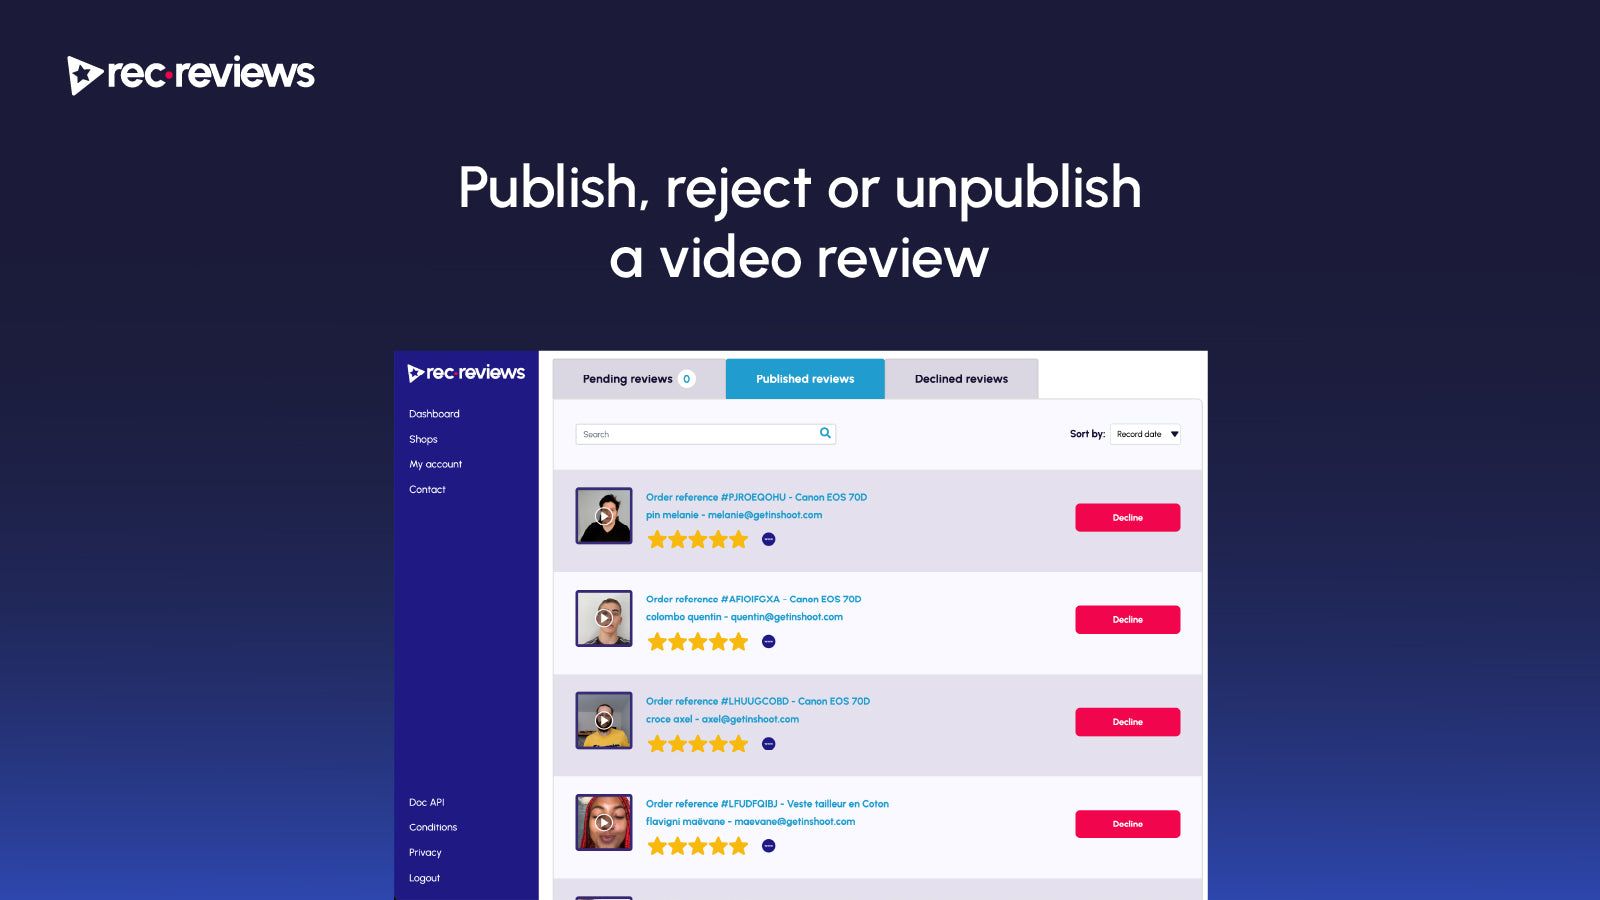 Publish, reject or unpublish a video review